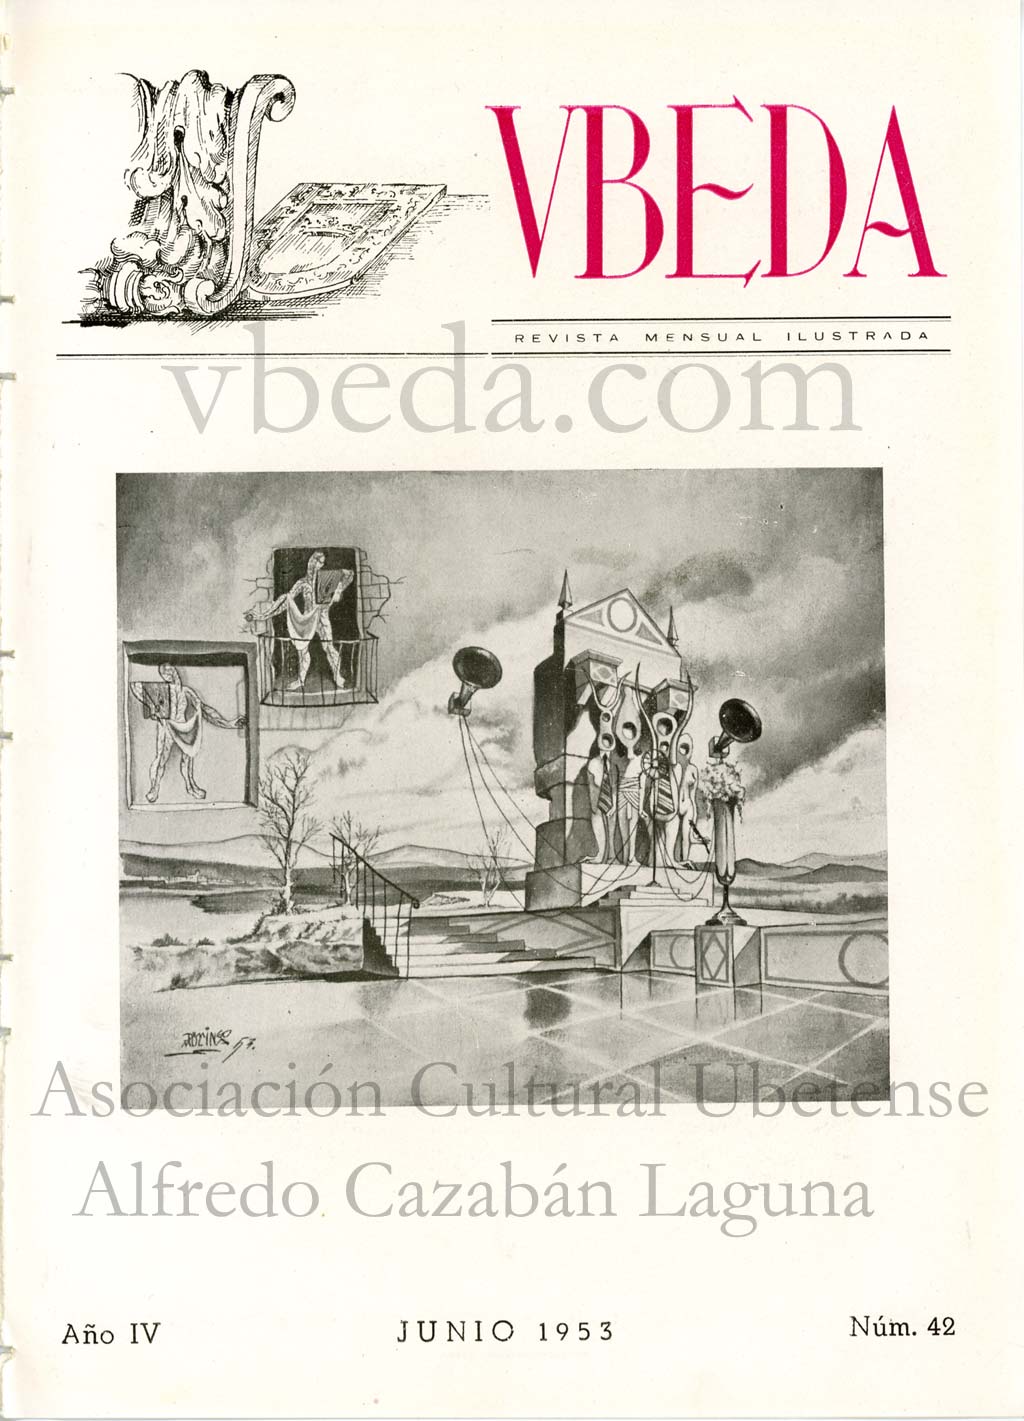 Revista Vbeda. AÃ±o 4. NÂº 42 de junio de 1953